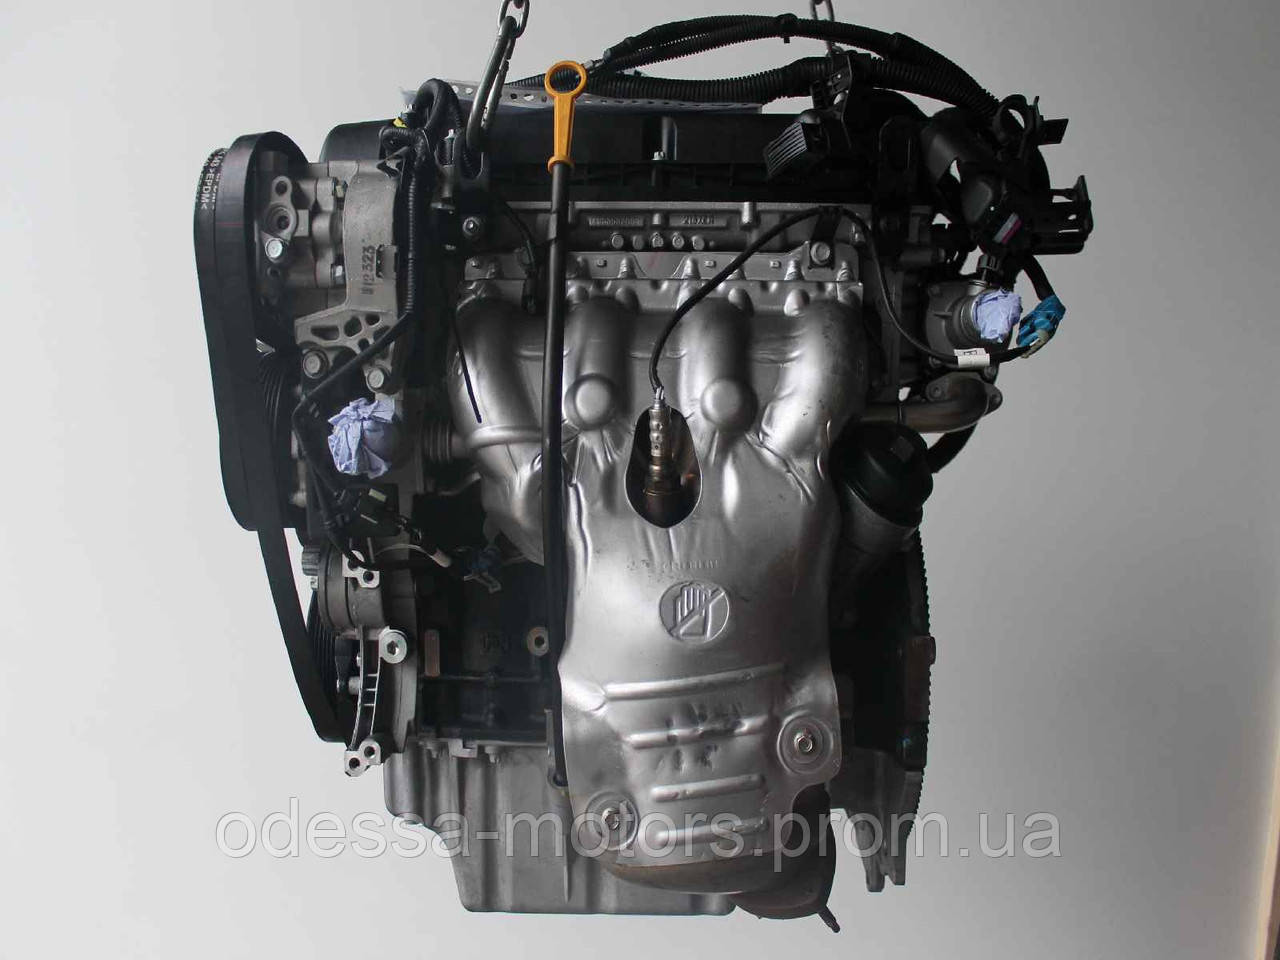 Двигун Opel Zafira Tourer C 1.8, 2011-today тип мотора A 18 XER